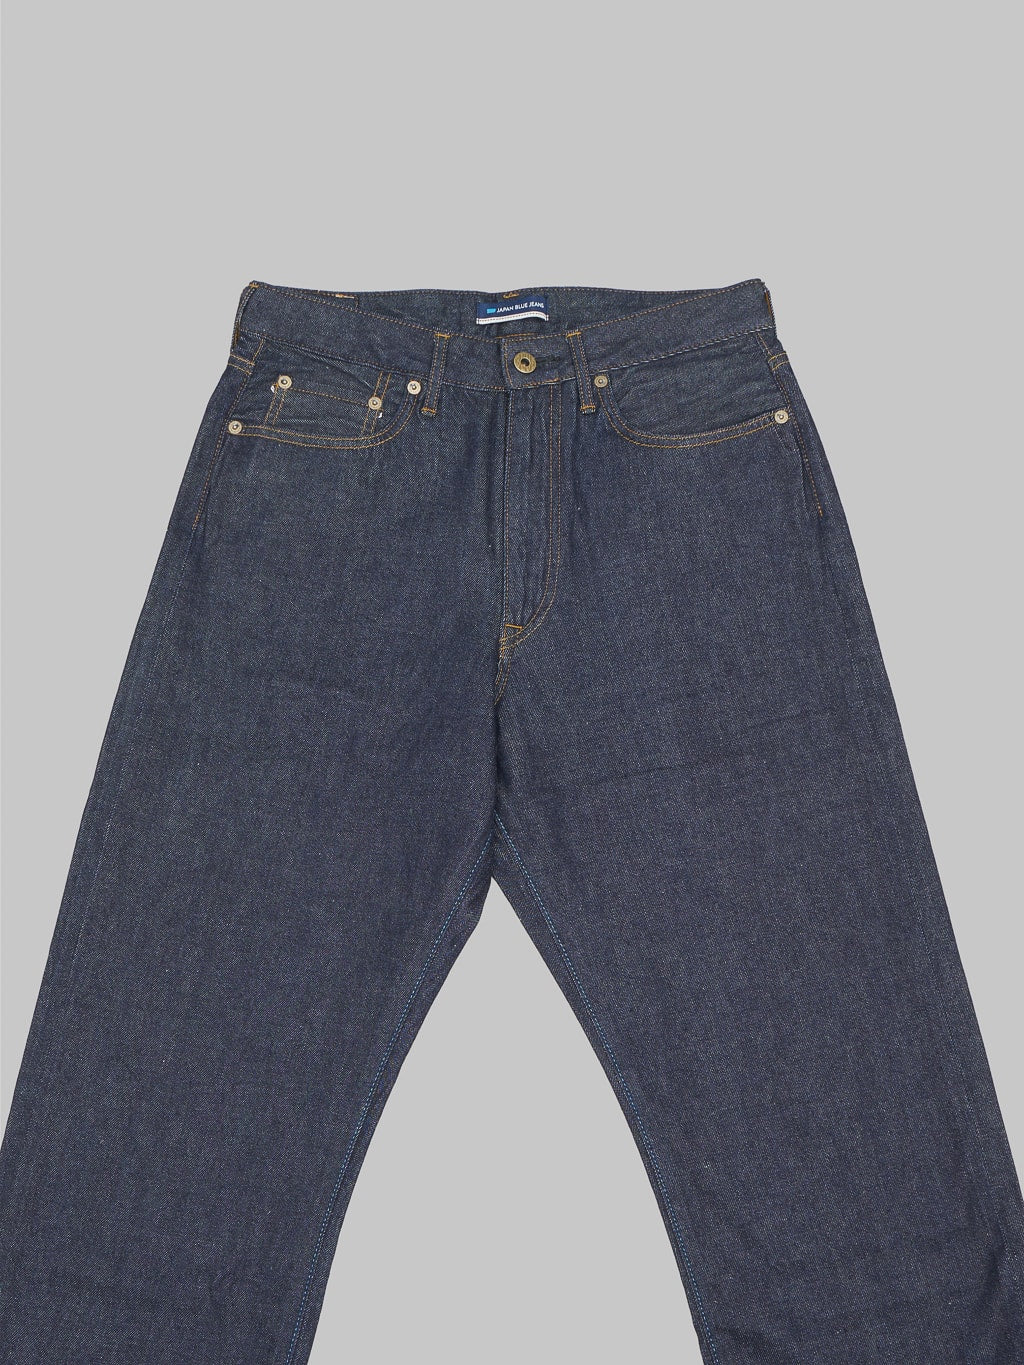 Japan Blue J508 lightweight selvedge denim loose Jeans front details